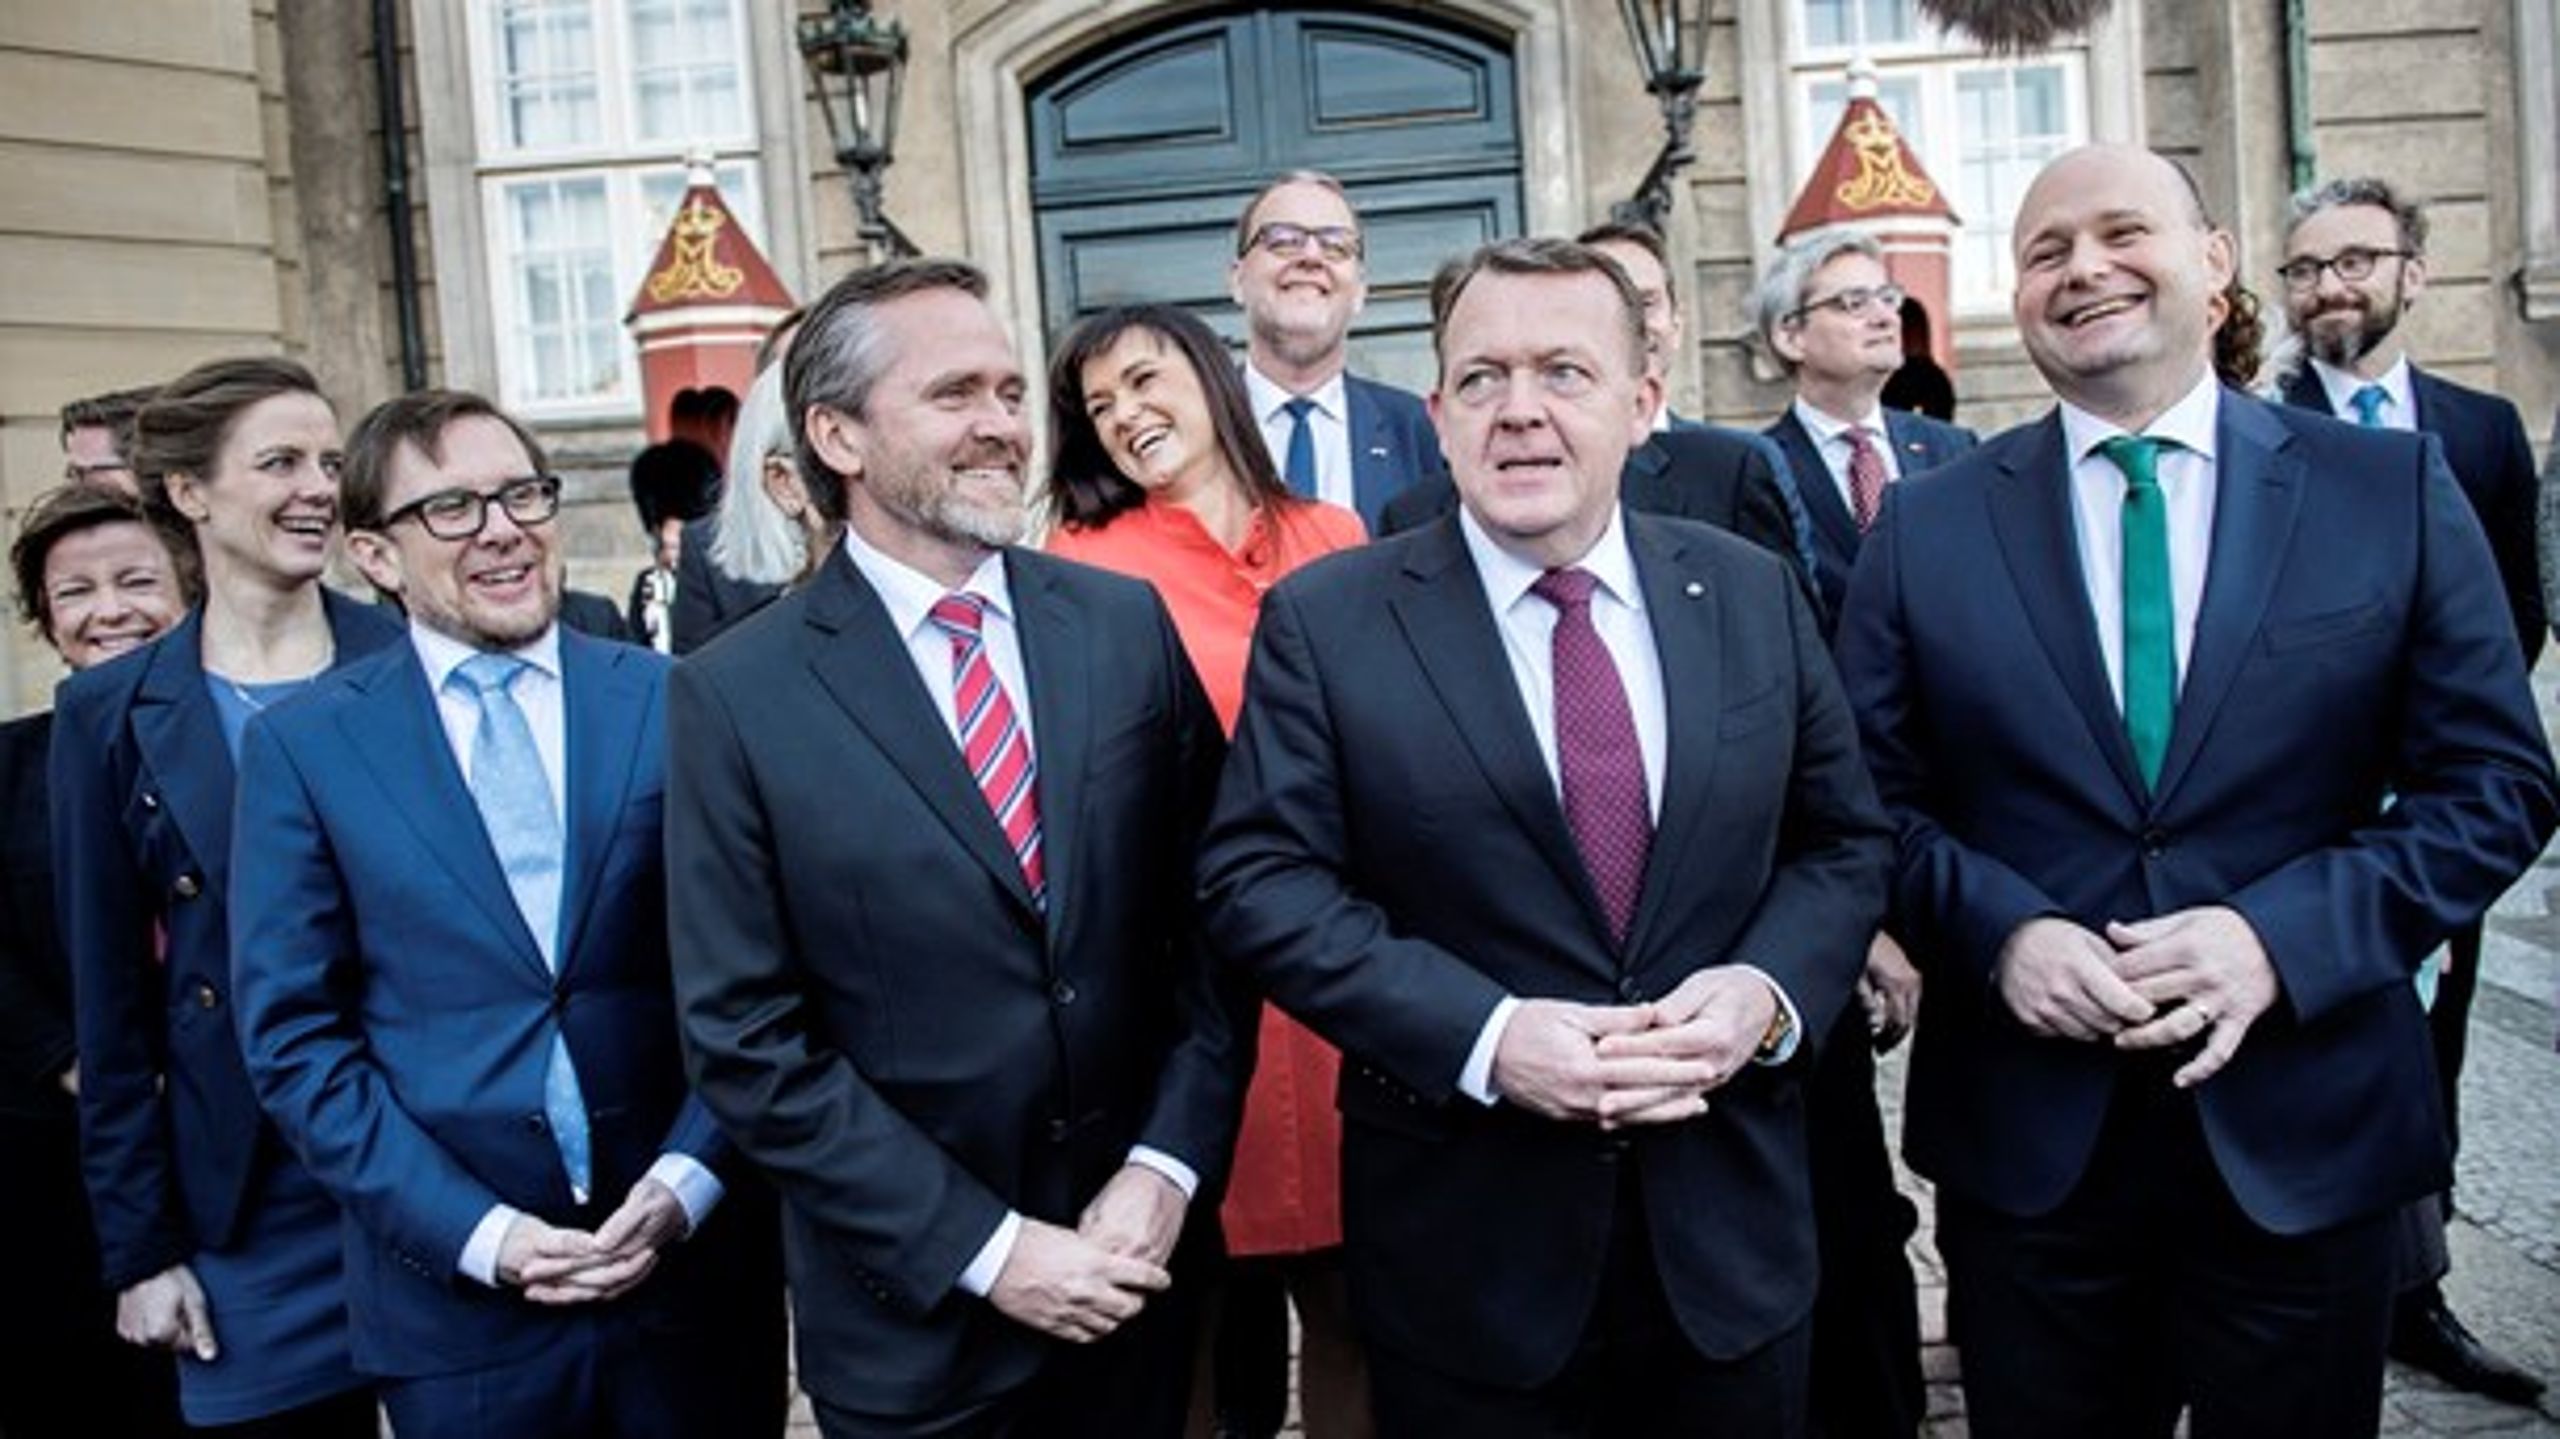 Den nye VLAK-regering da den&nbsp;blev præsenteret på Amalienborg slotplads mandag. De grønne ngo'er har større håb til den end V-regeringen.